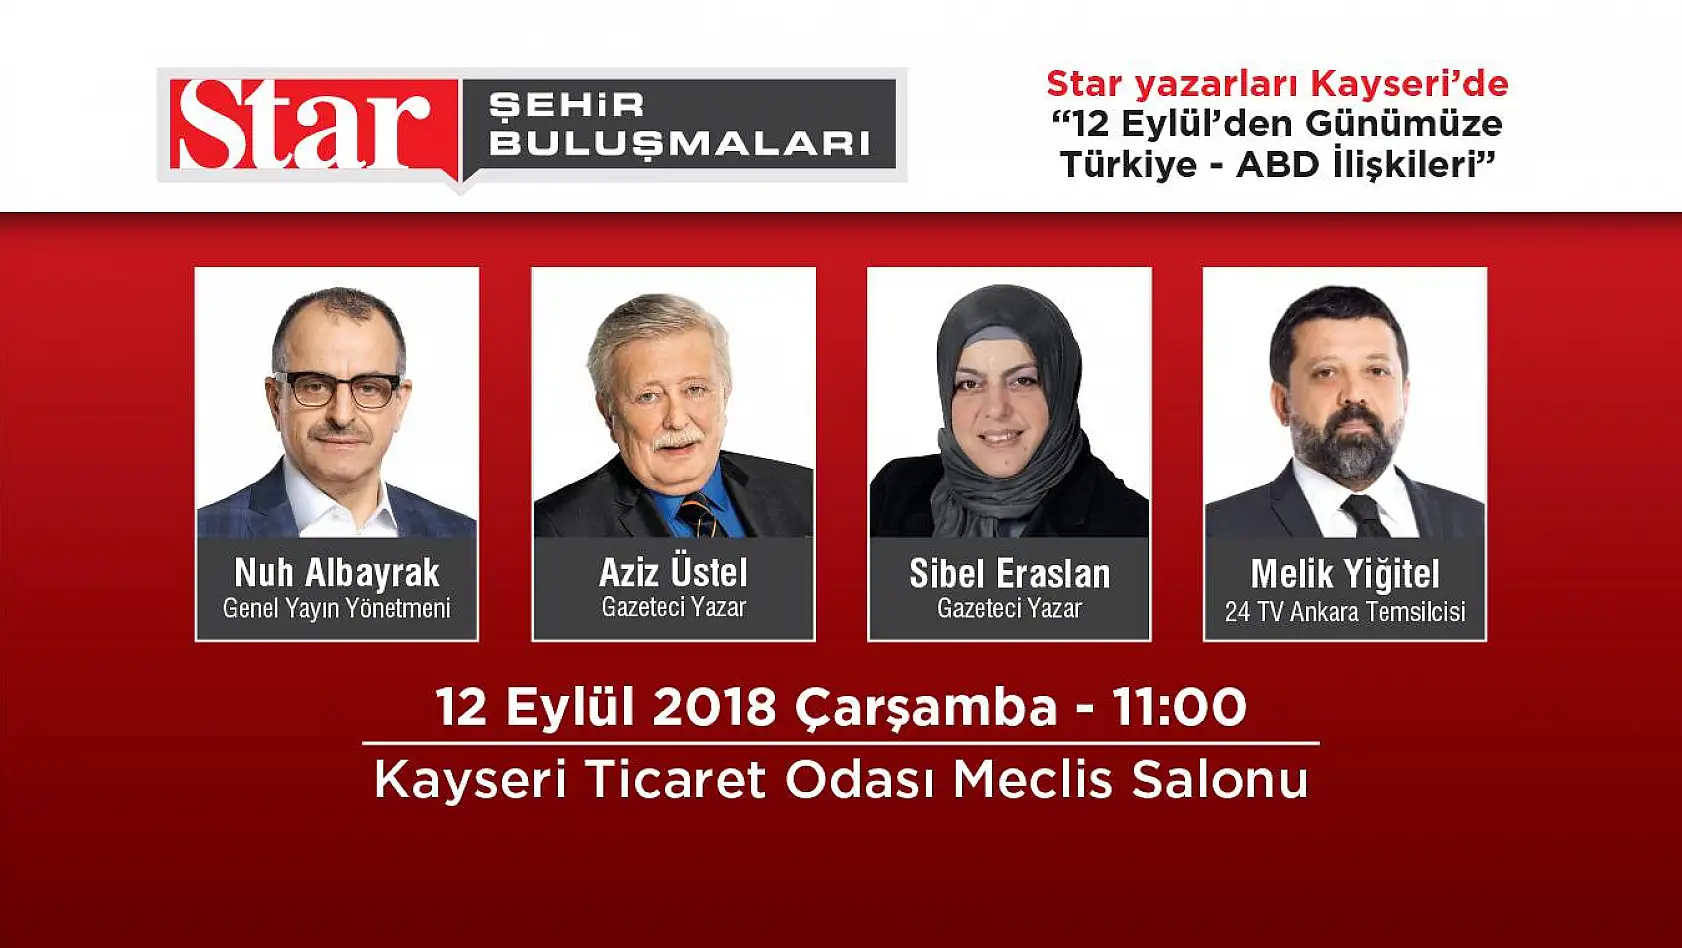  Star Gazetesi Yazarları Kayseri'ye AB'yi konuşmaya geliyor